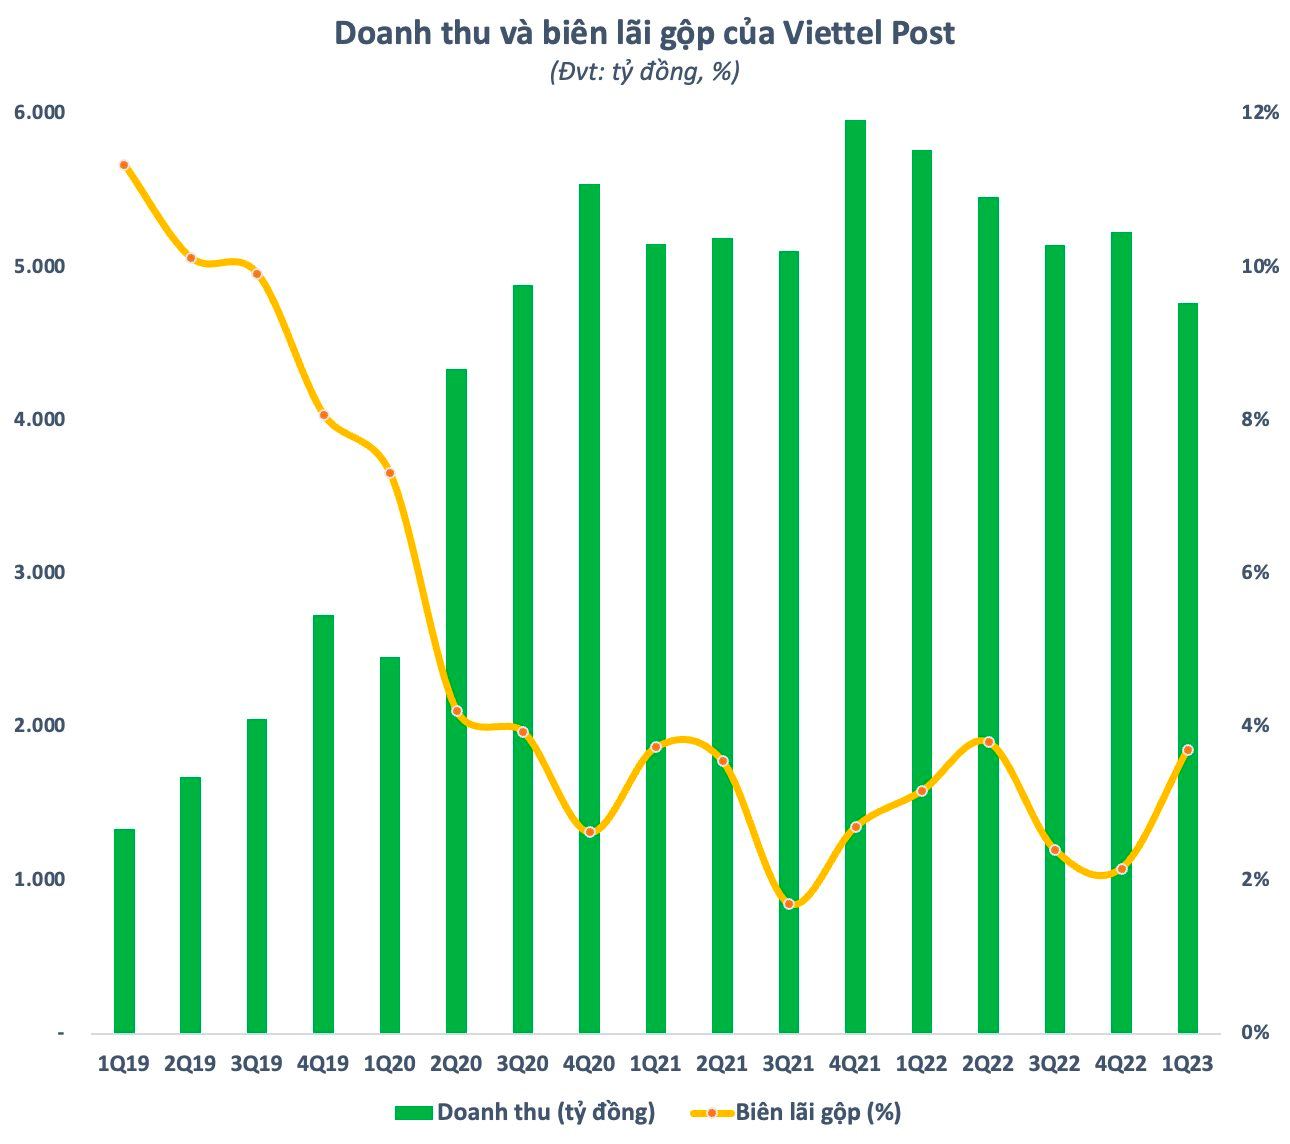 Doanh thu Viettel Post (VTP) xuống thấp nhất 11 quý, 100 đồng lãi chỉ 1,5 đồng - Ảnh 1.